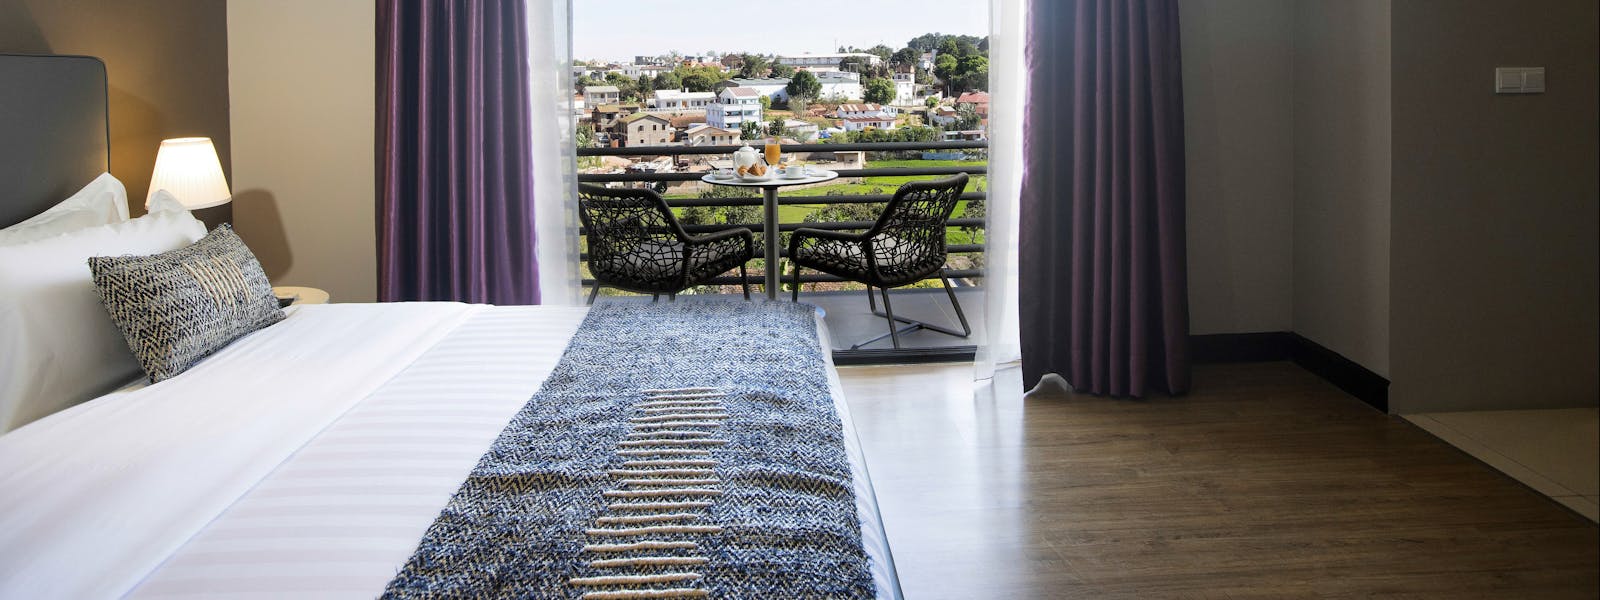 Suite luxe de l'hôtel San Cristobal à Antananarivo, Madagascar